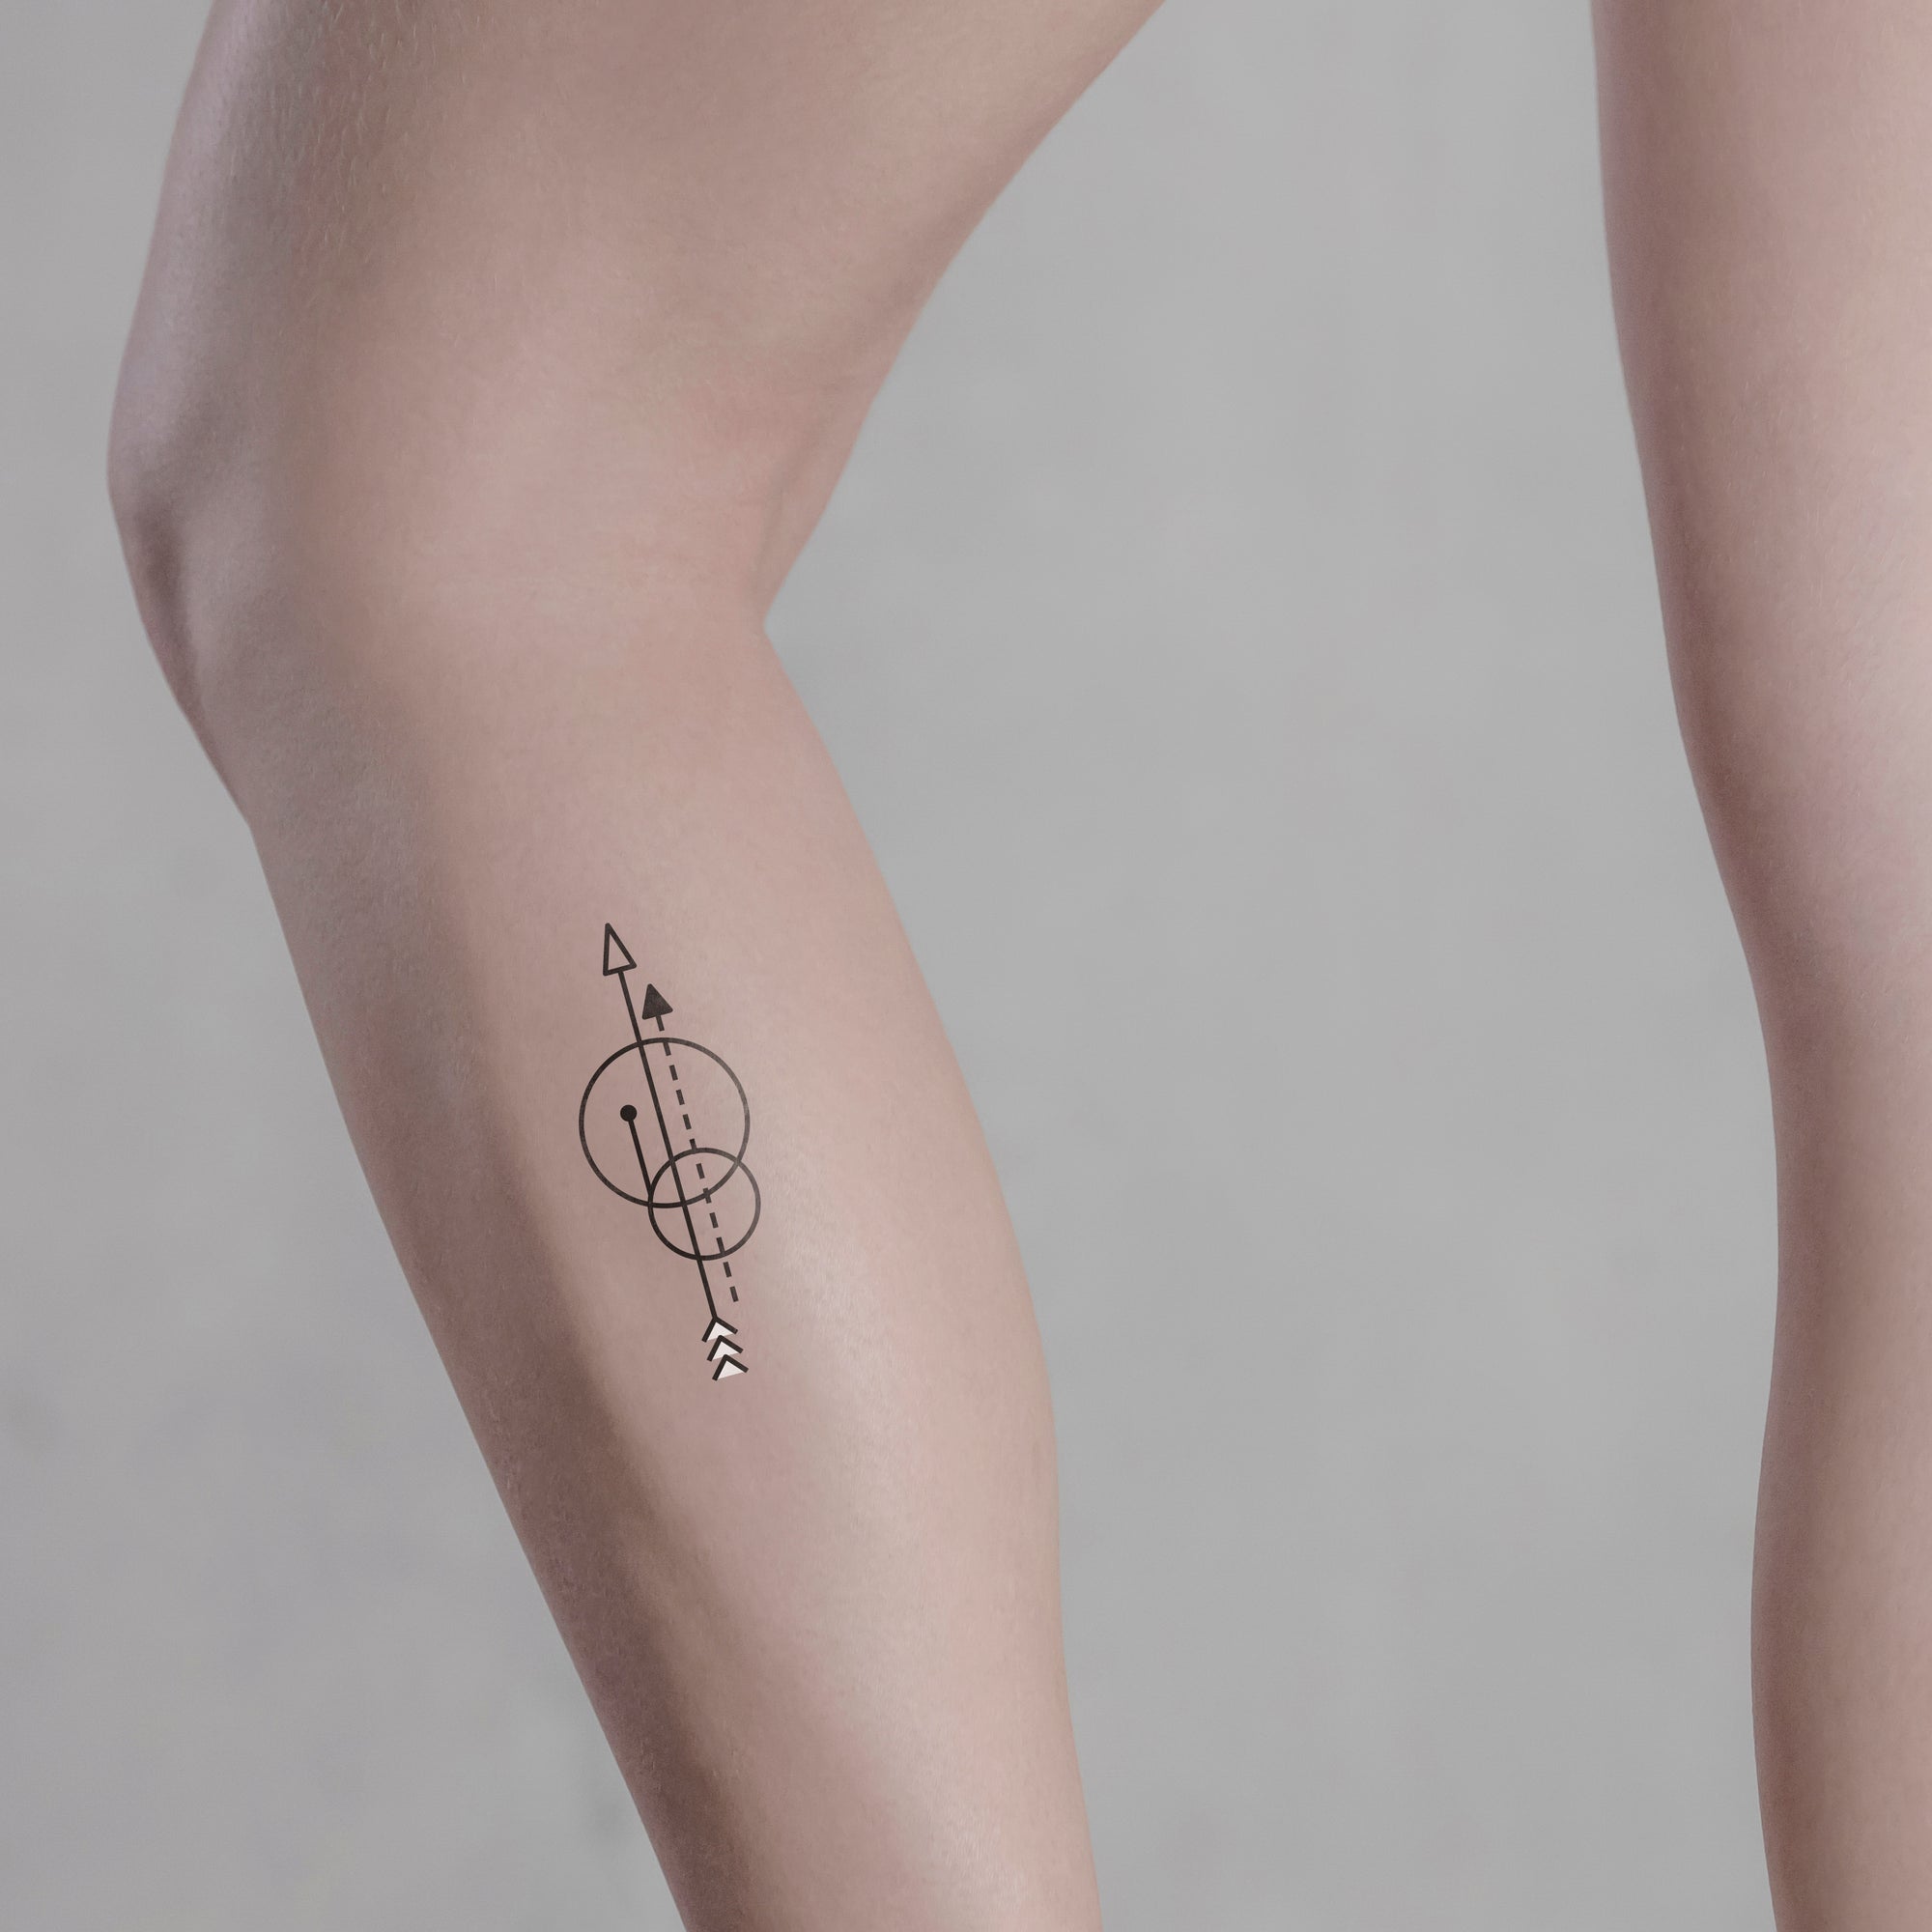 Pfeile und Kreise Tattoo von minink, der Marke für temporäre Tattoos.